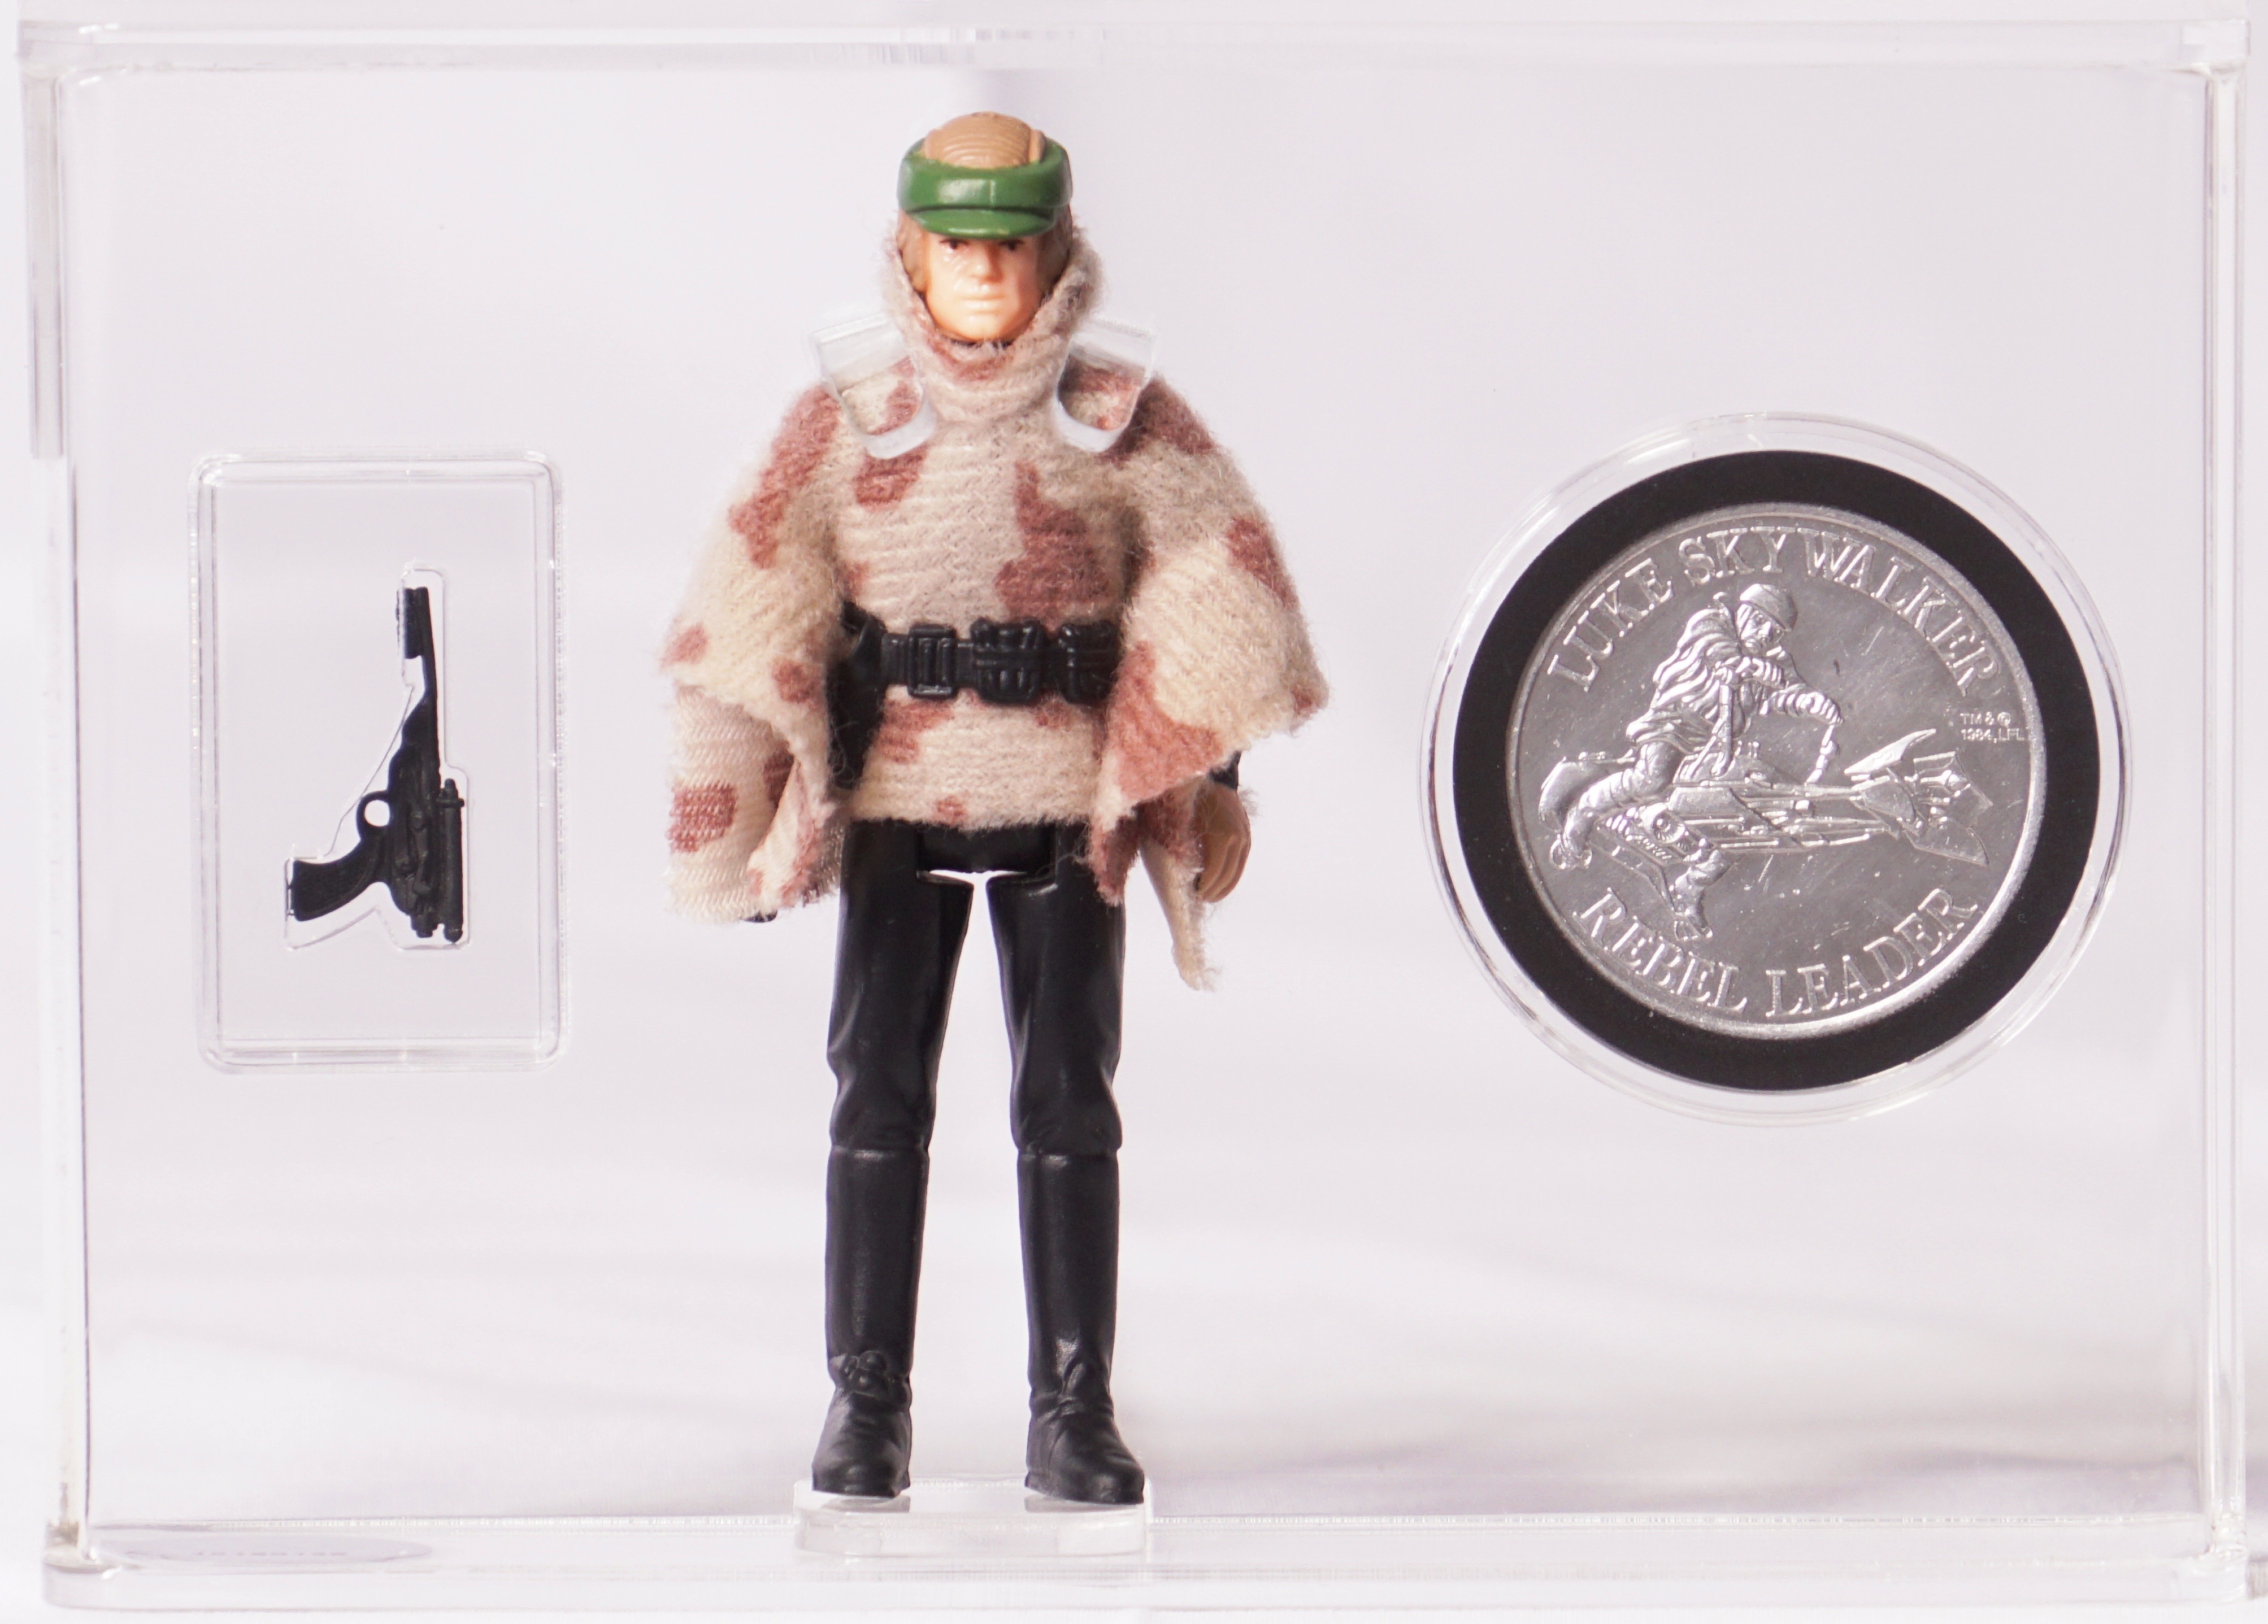 1985 POTF Star Wars Loose Action Figure & Coin - Luke Skywalker (In Battle  Poncho)